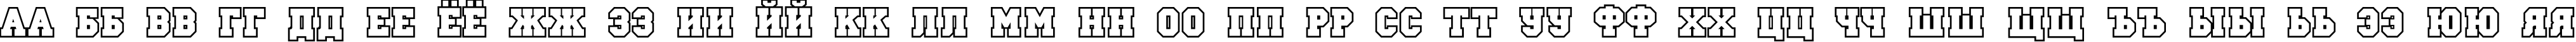 Пример написания русского алфавита шрифтом a_CampusOtl Bold